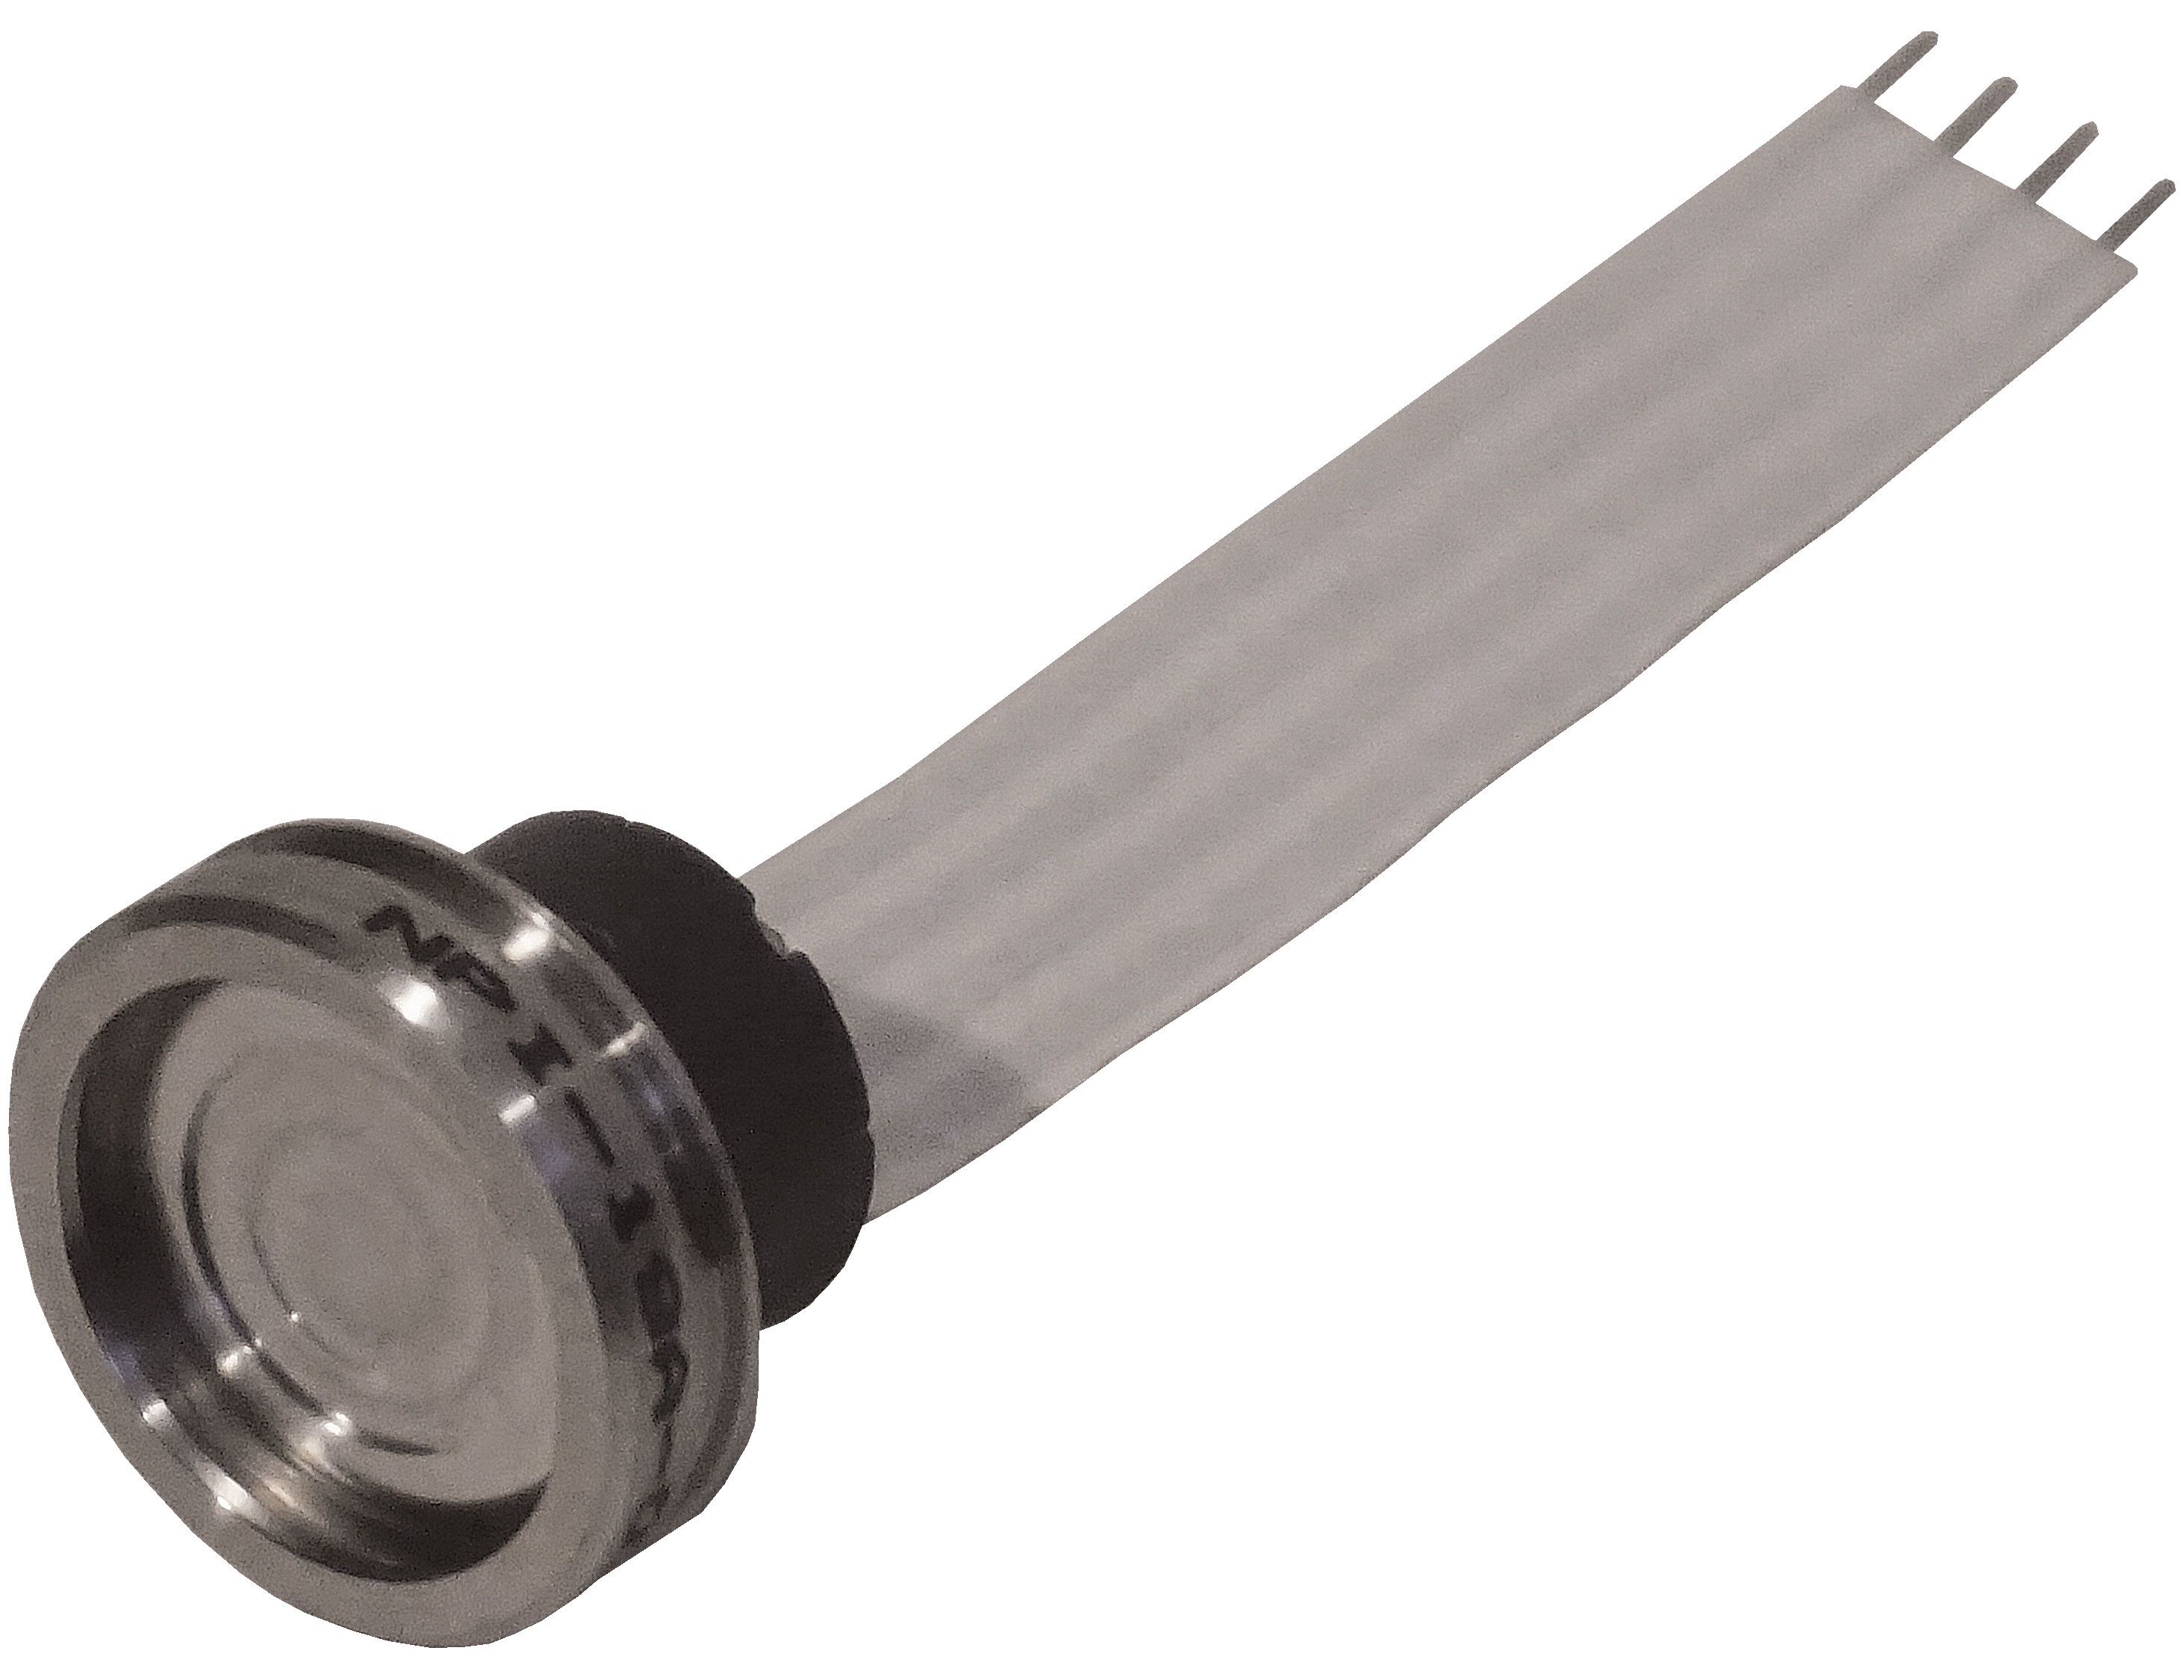 Amphenol NPI-19 Gauge Pressure Sensor 0psi bis 200psi, Digital, für Gas, Flüssigkeit